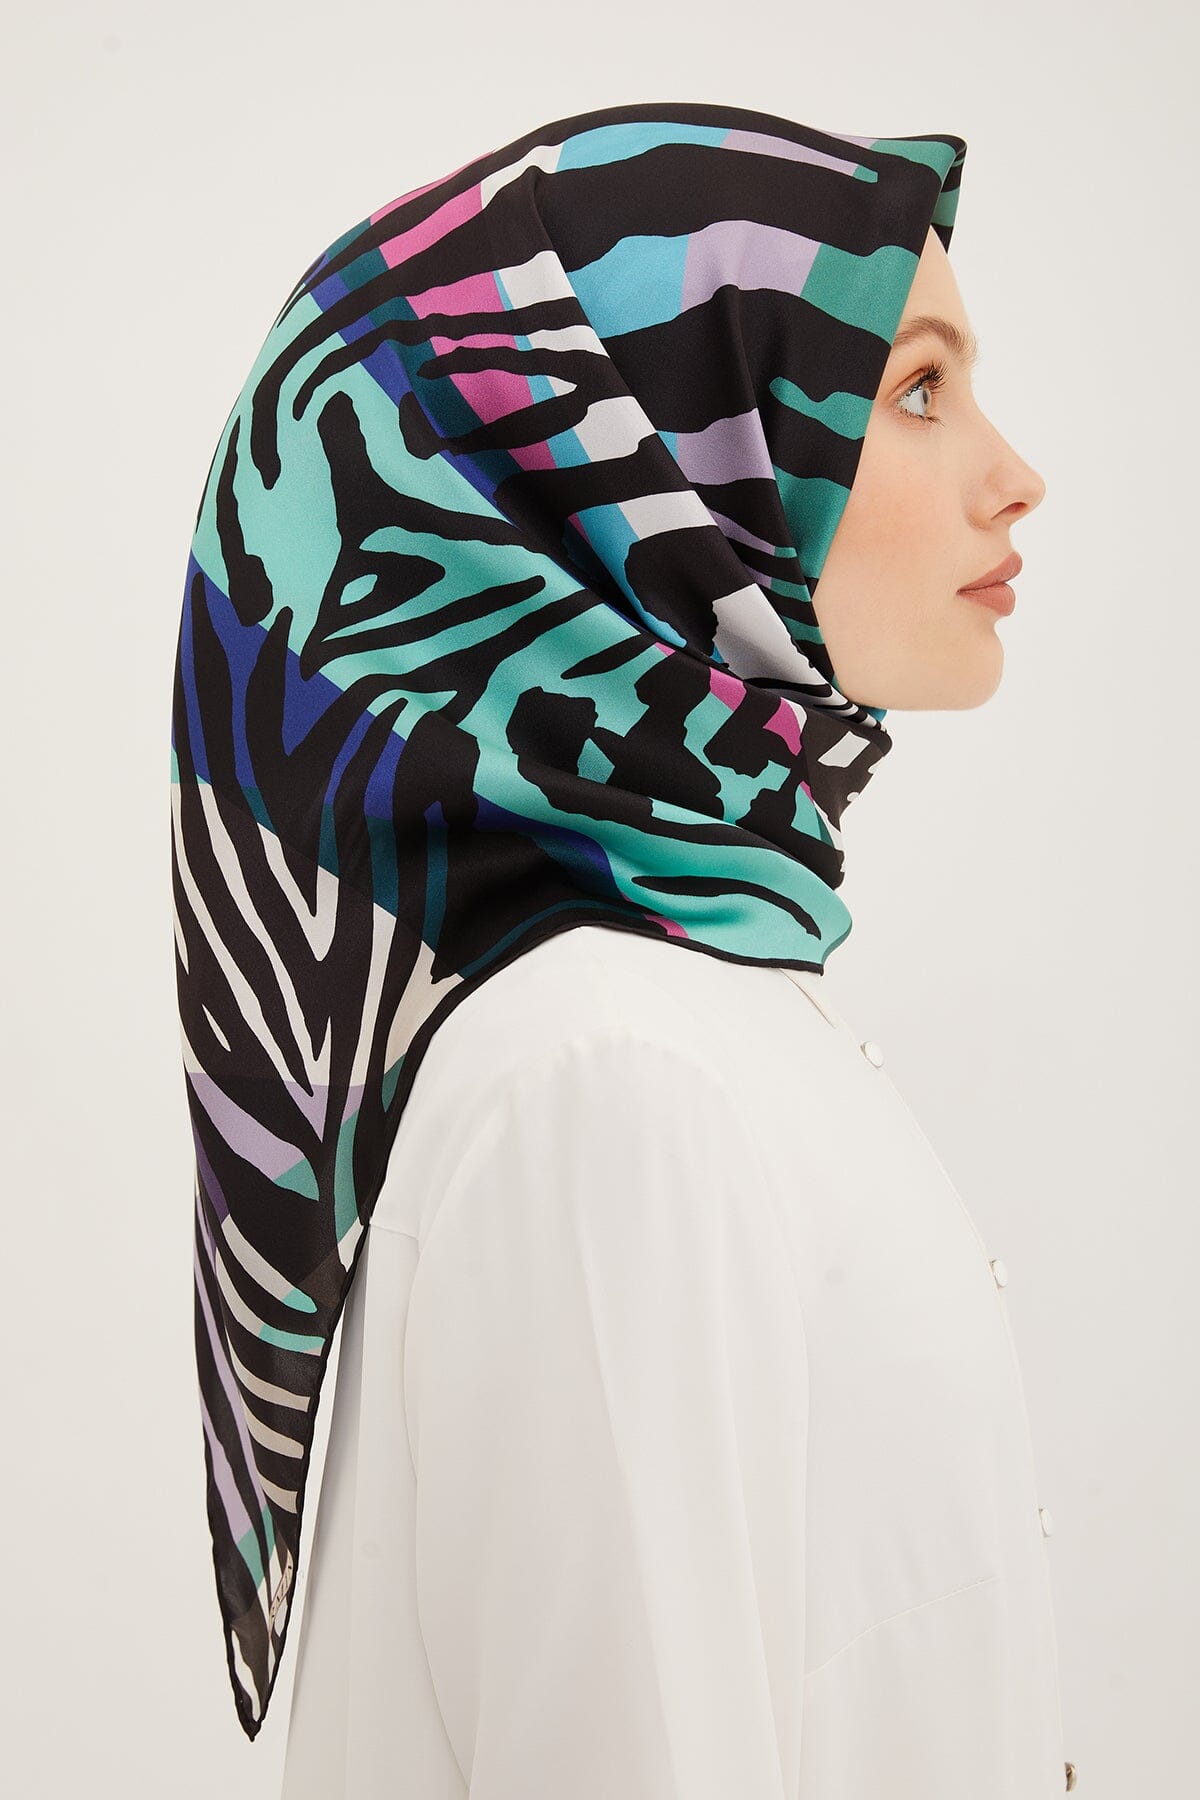 Armine Empower Women Silk Scarf #50 Silk Hijabs,Armine Armine 